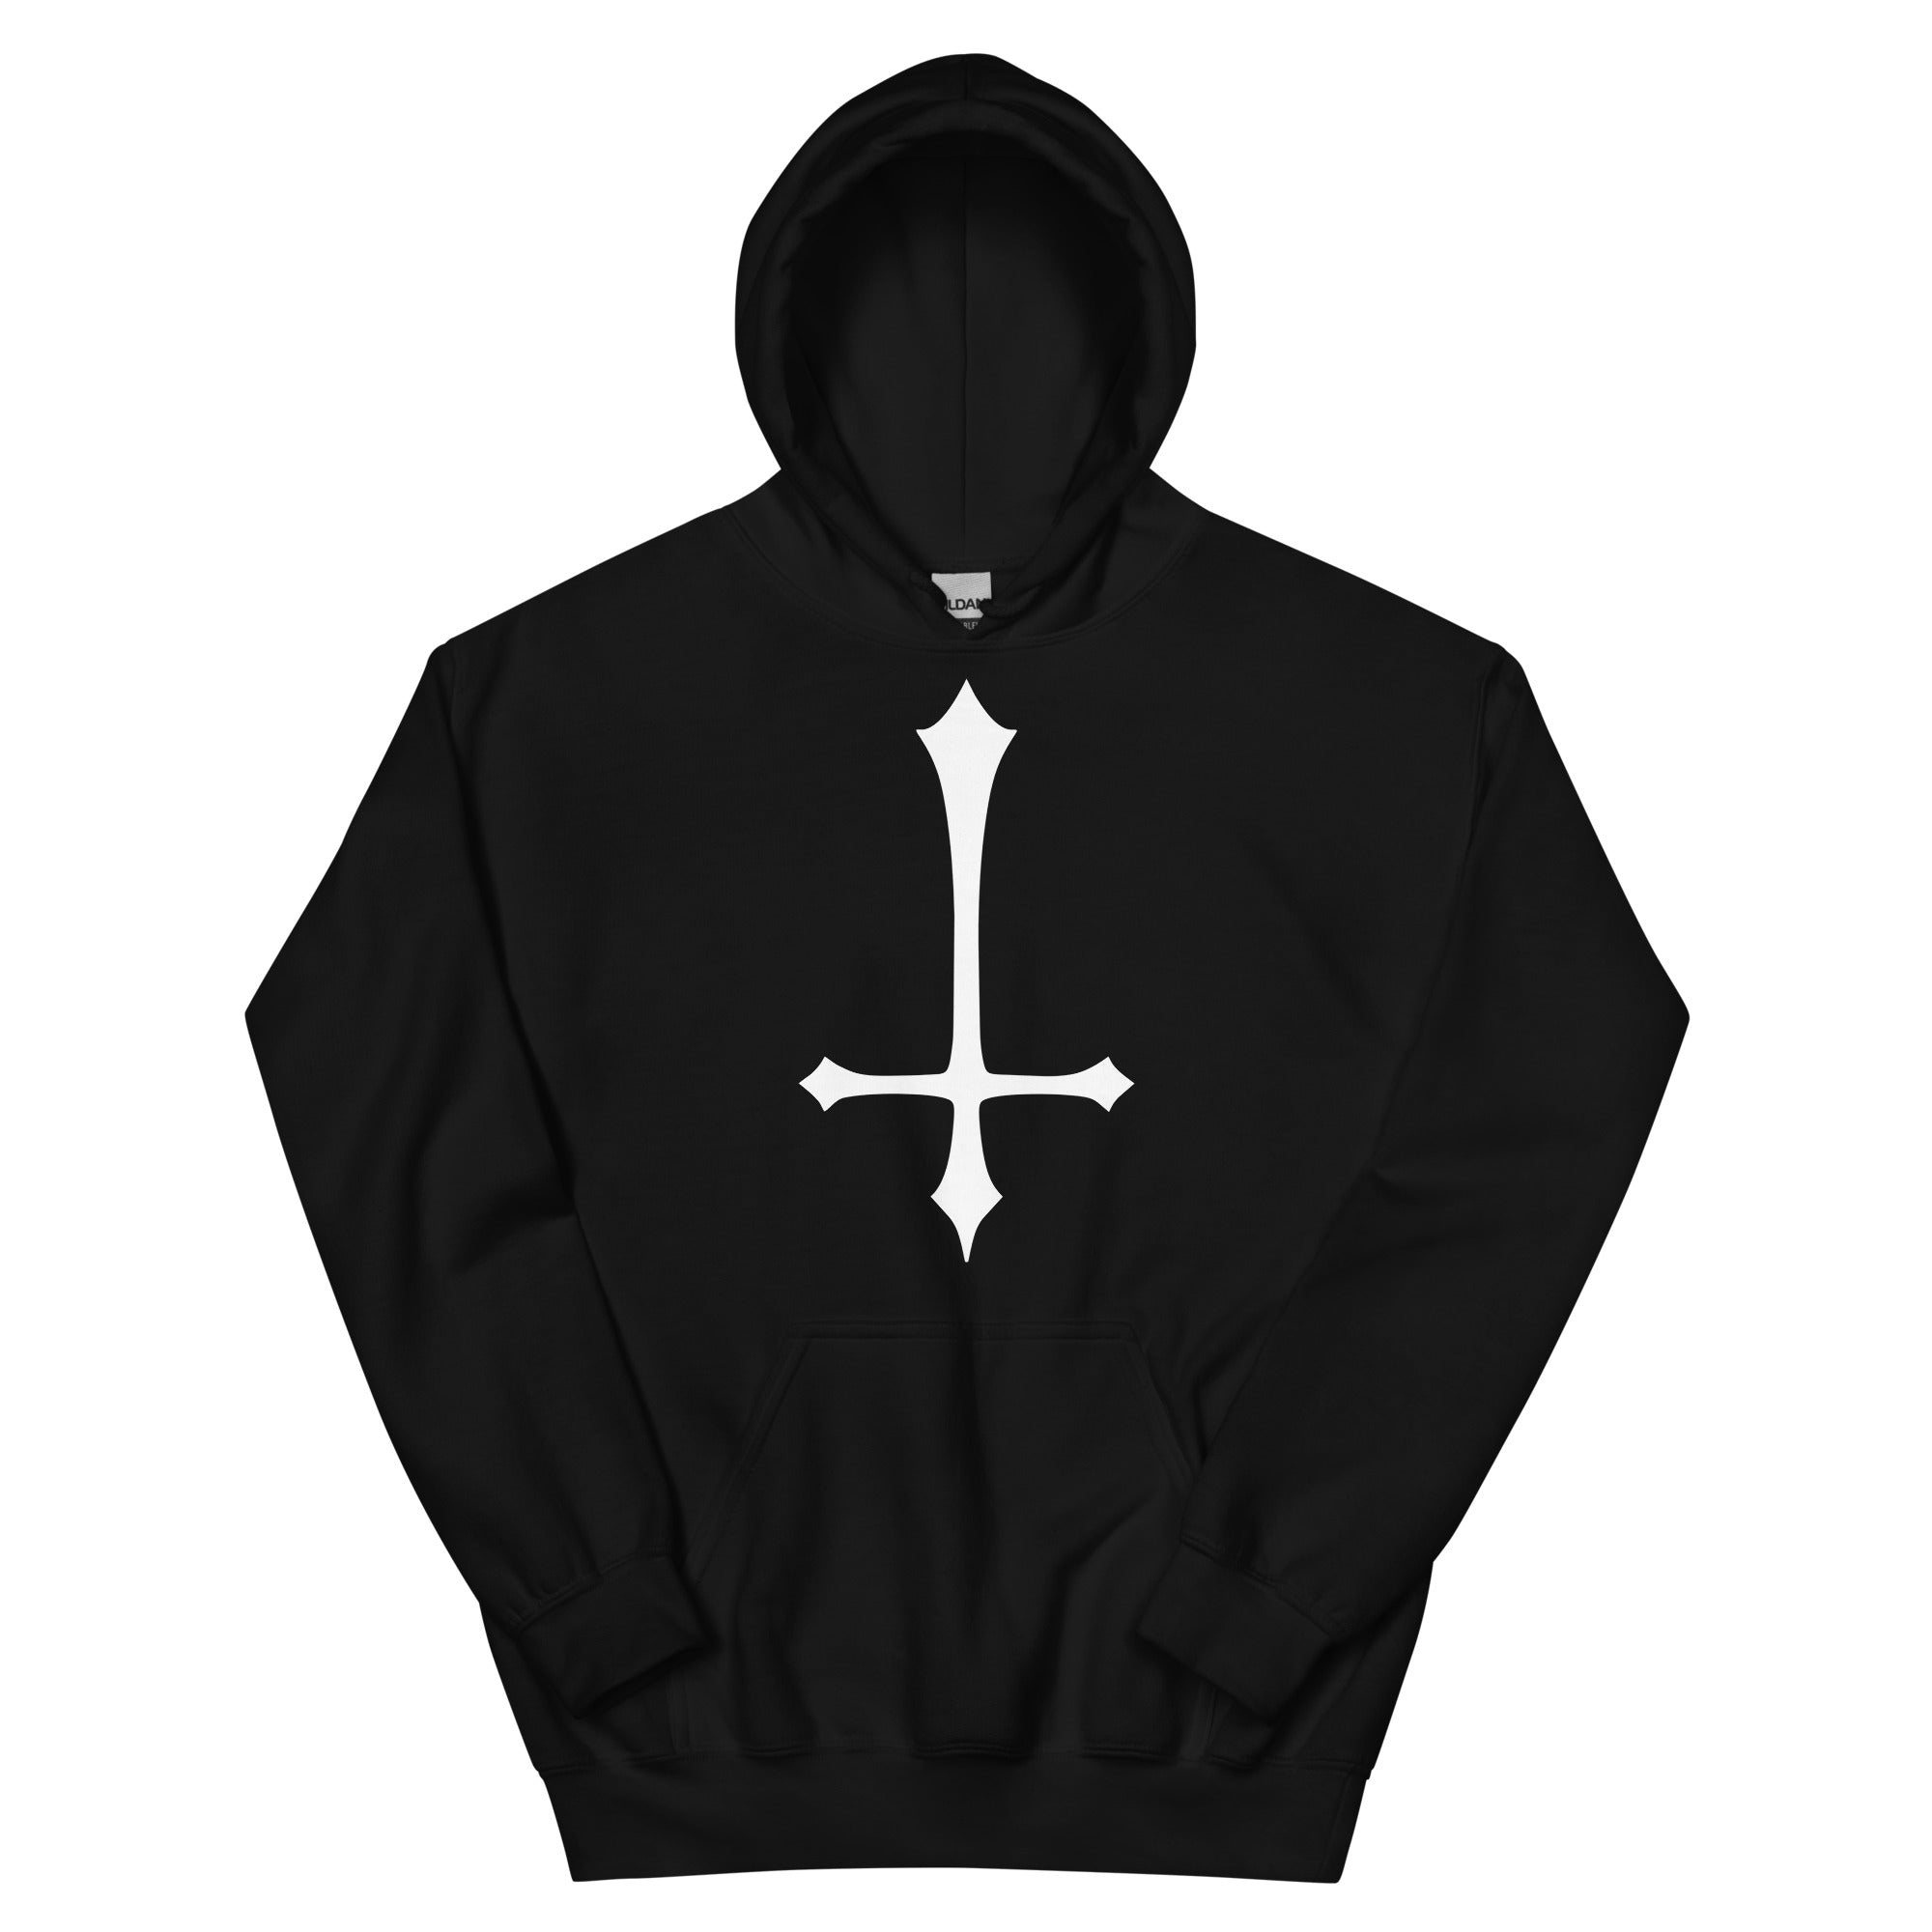 White Inverted Satanic Unholy Cross Unisex Hoodie Sweatshirt